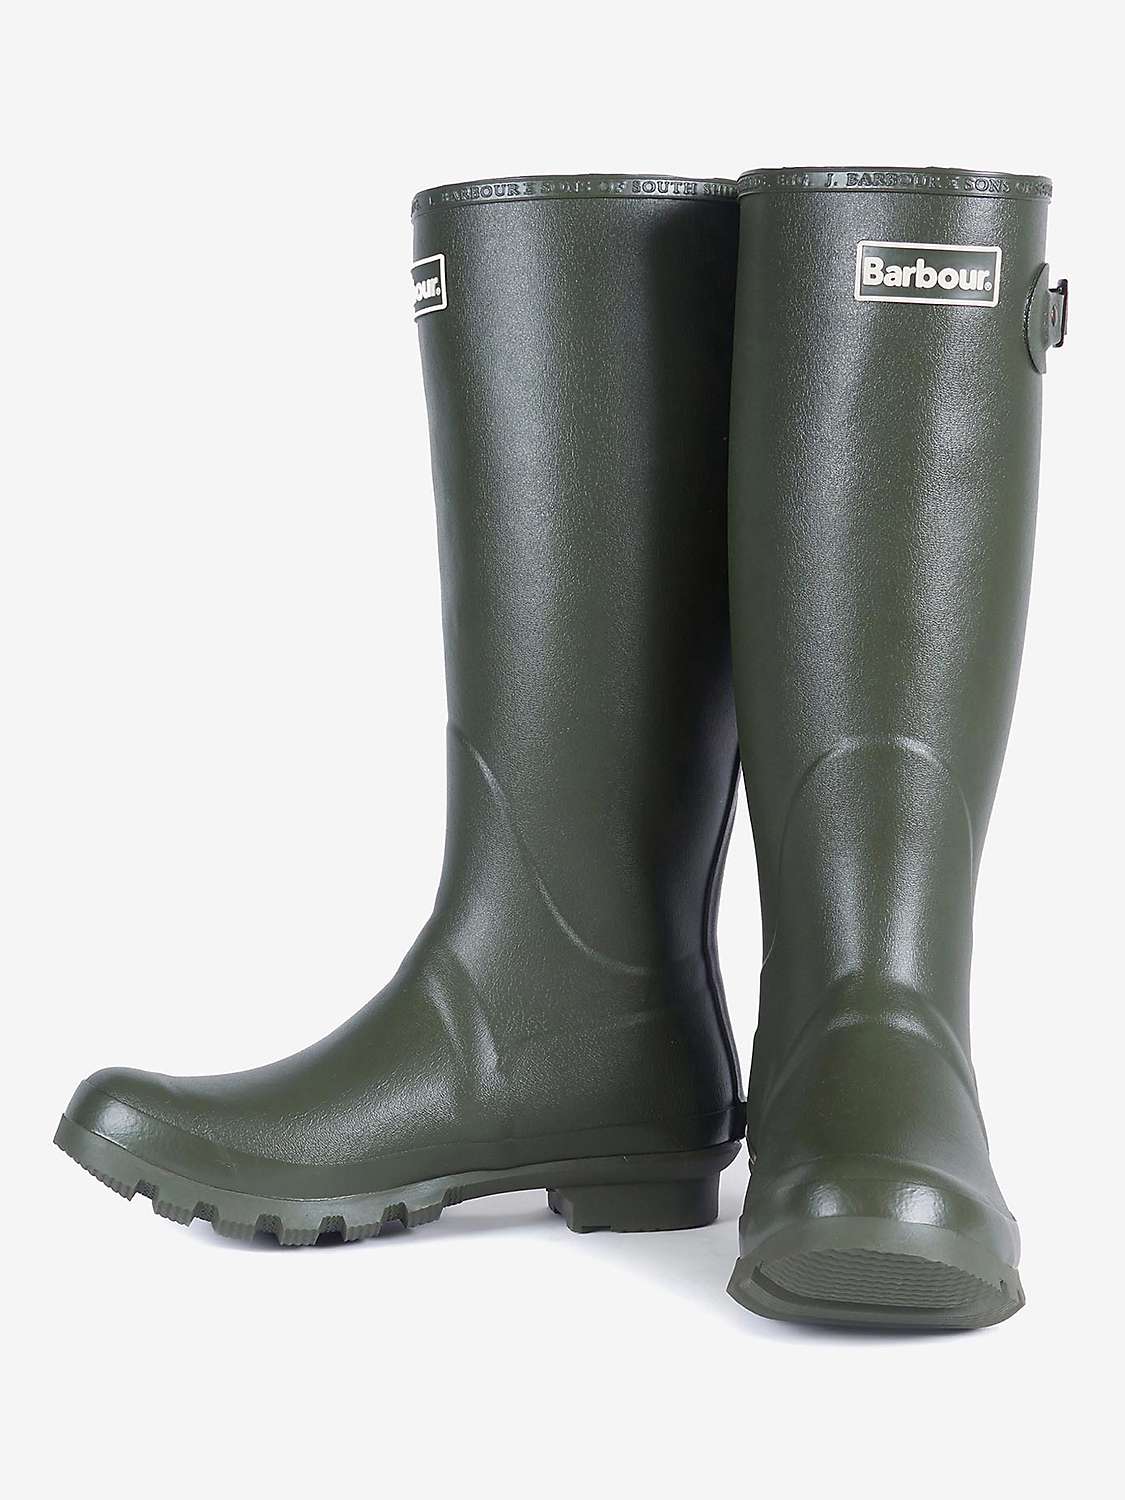 Buy Barbour Bede Waterproof Wellington Boots Online at johnlewis.com